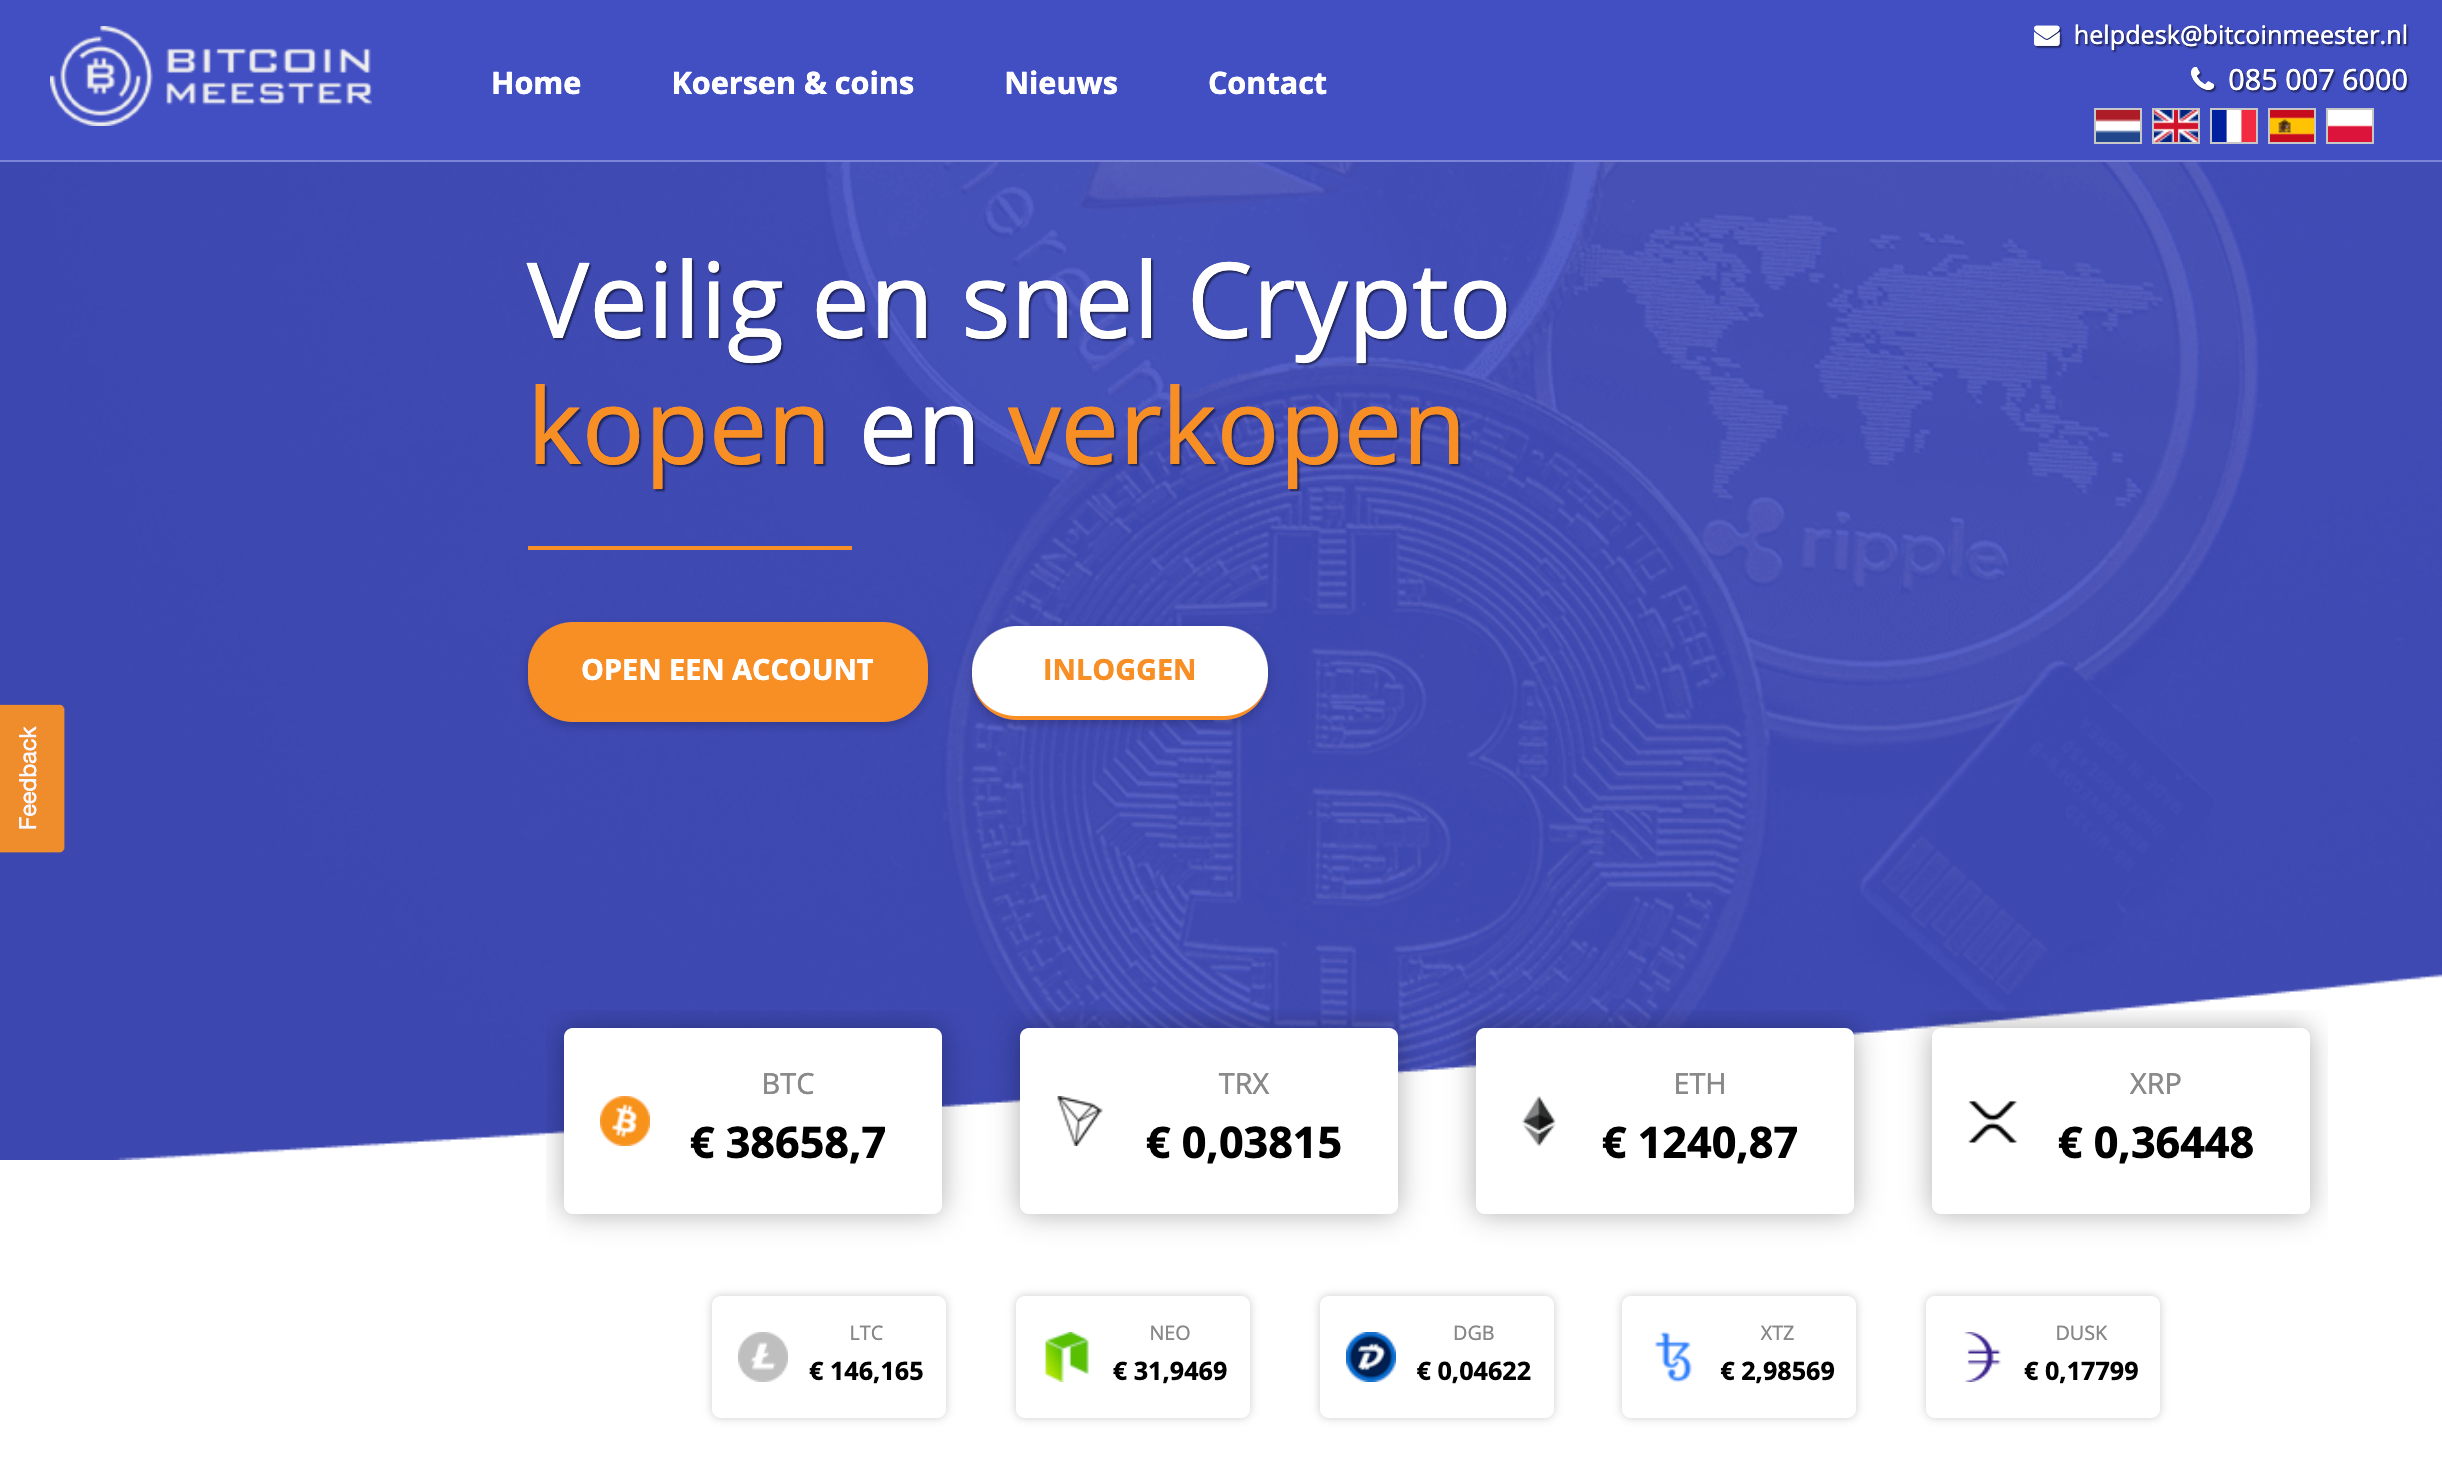 Bitcoin meester website